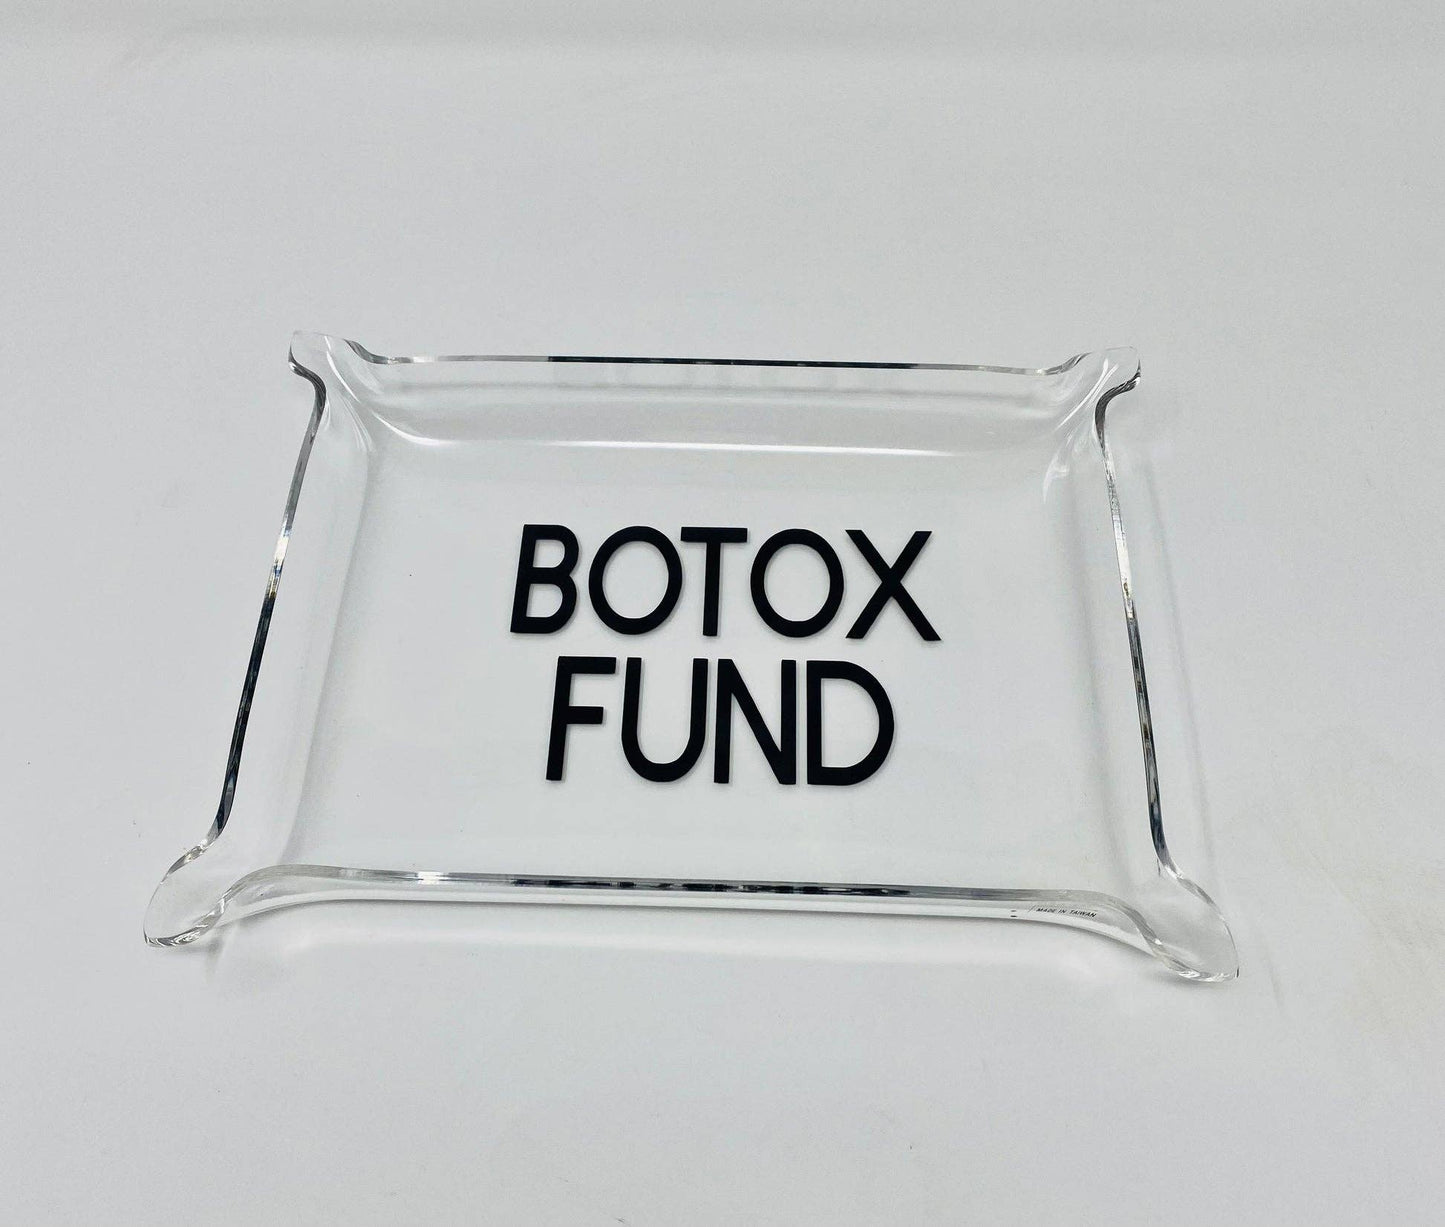 Botox Fund Acrylic Tray